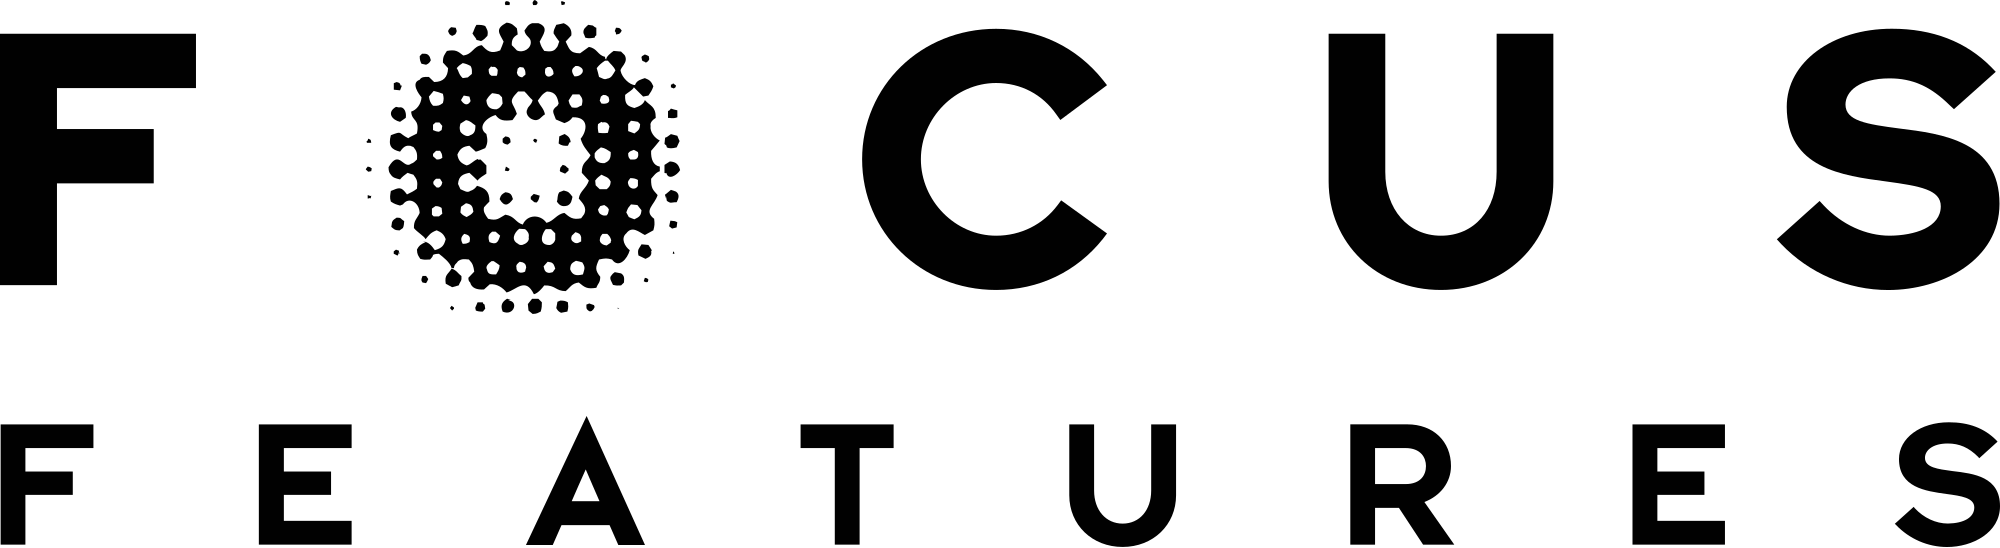 Focus Features Logo